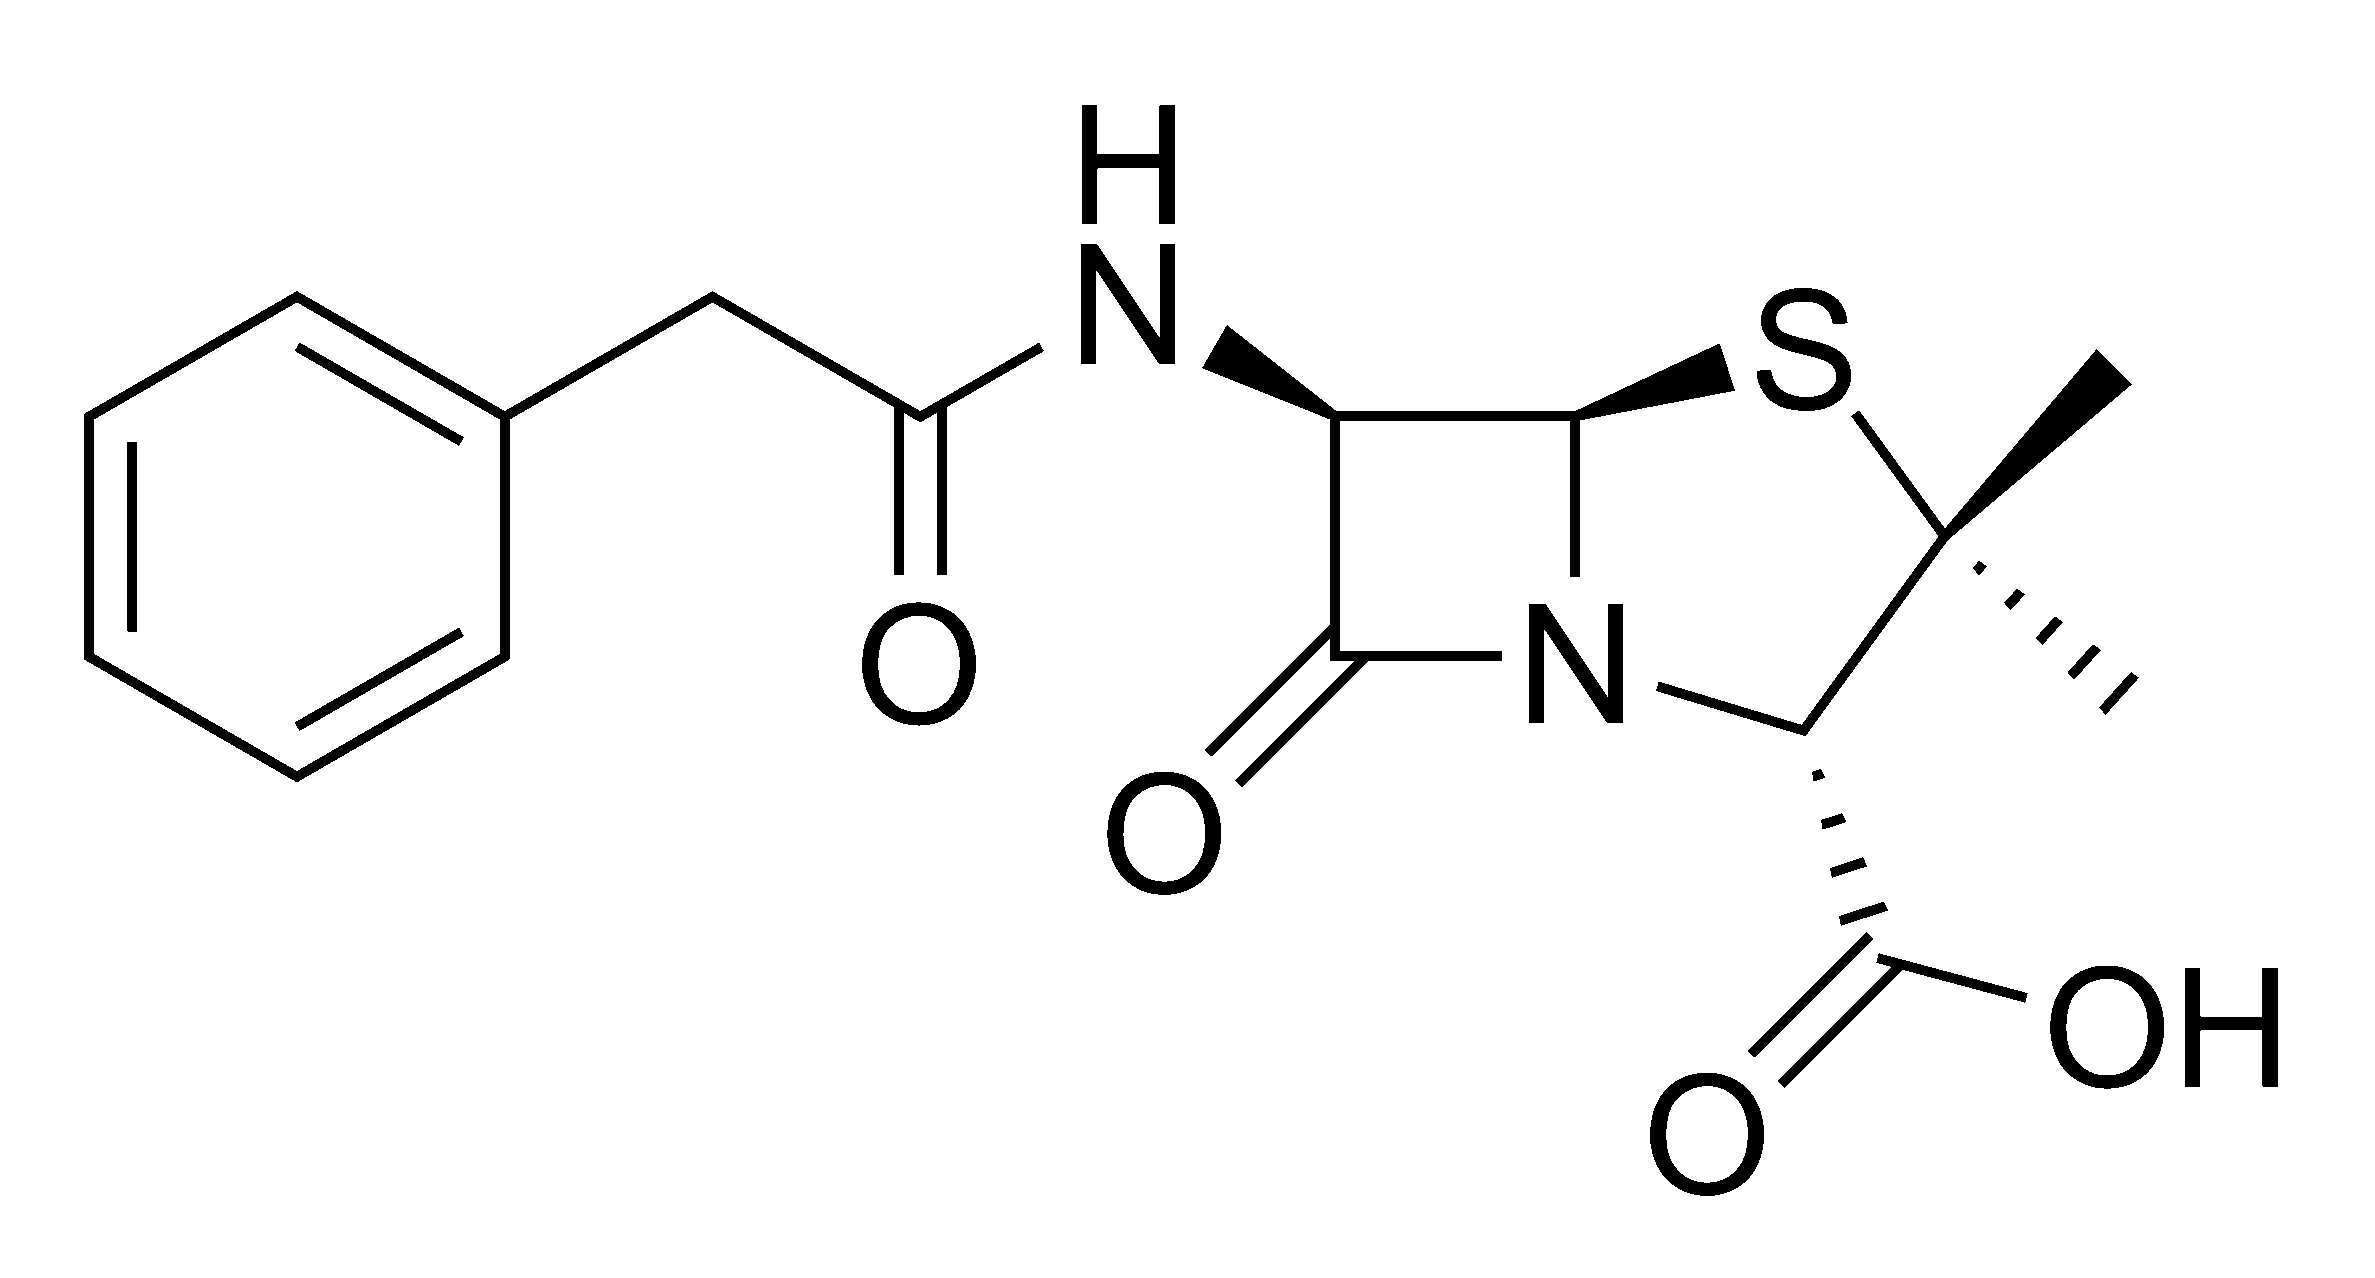 Penicillin molecular structure